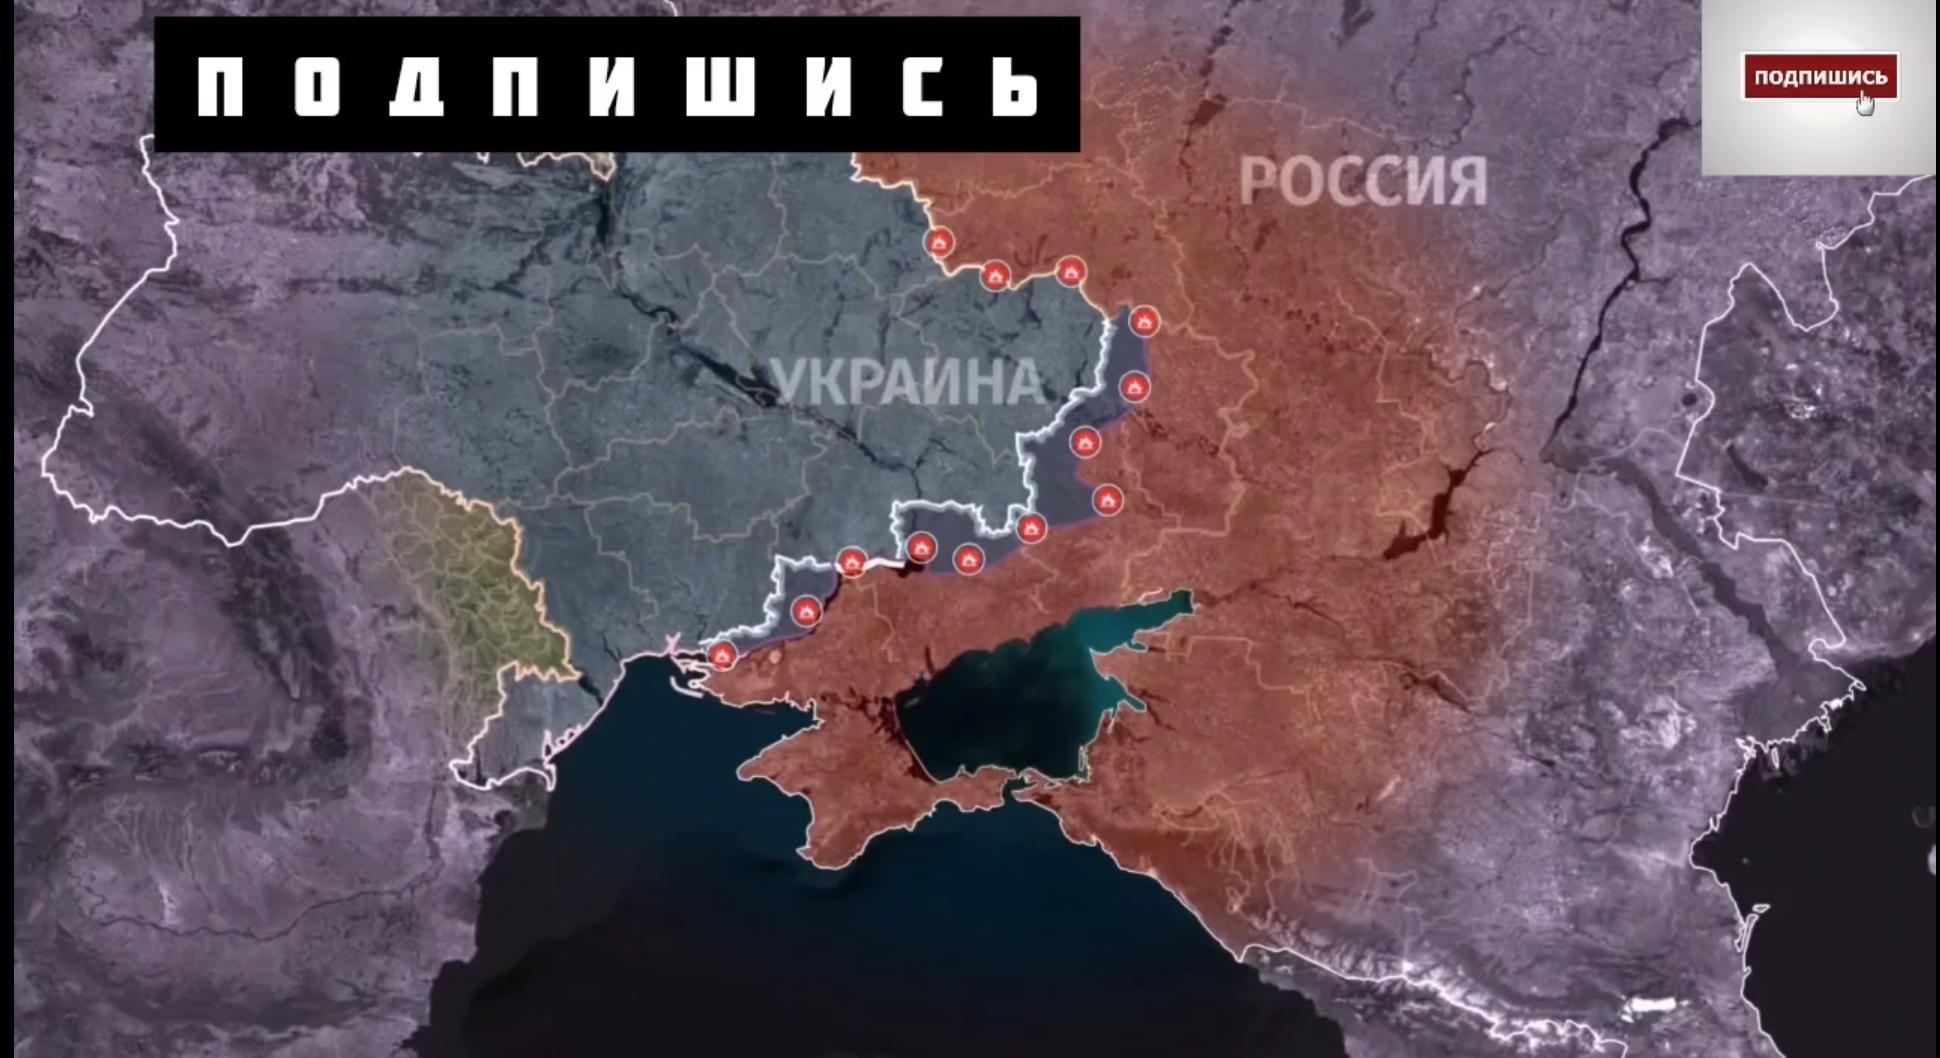 8 января 2023 г. Карта наступления на Украину. Российские военные на Украине. Карта Донецкой народной Республики 2023 год. Российско-украинский конфликт.